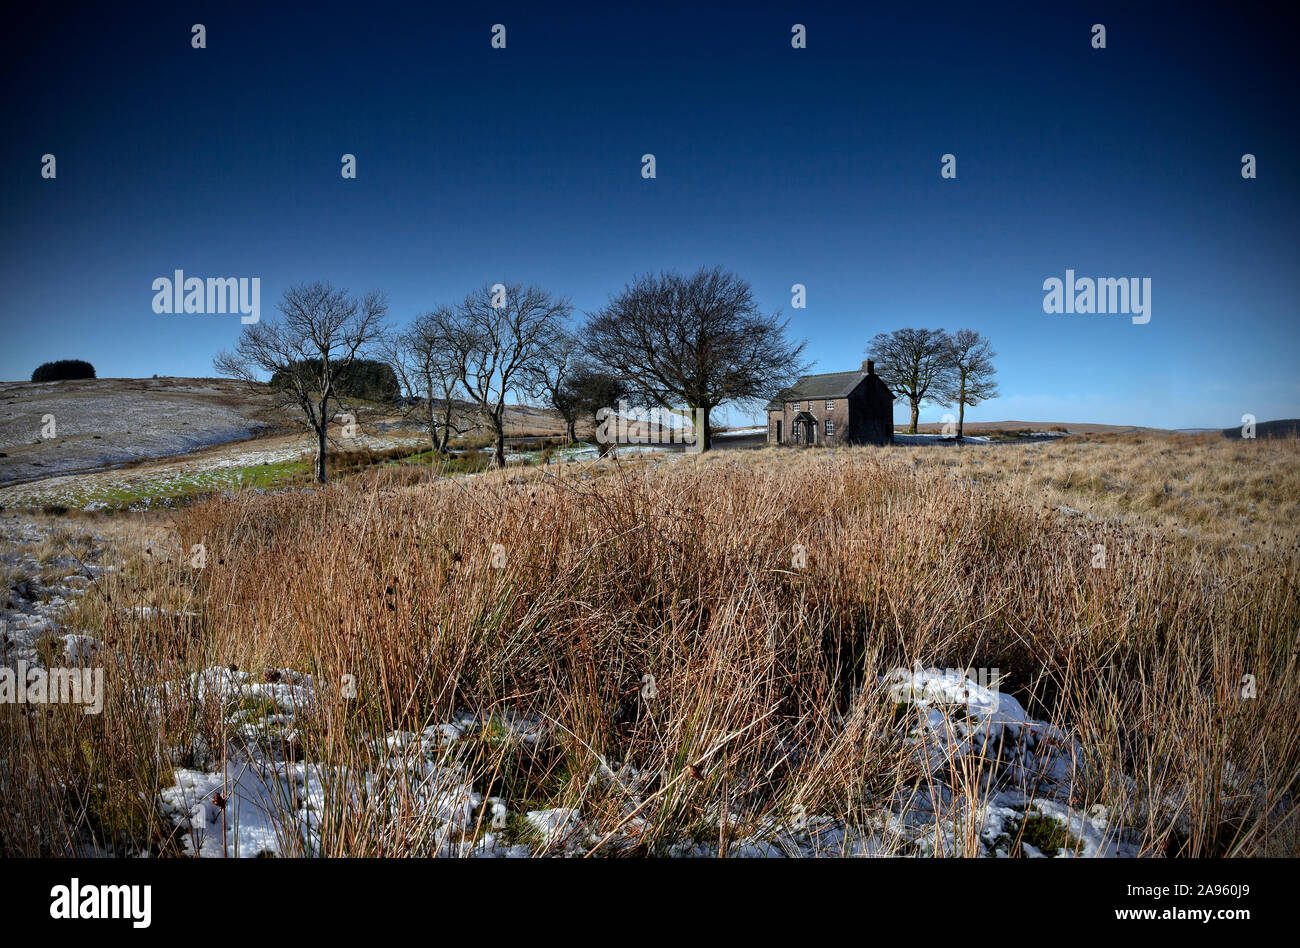 Remote solitaria cabaña de piedra rodeado por un pequeño grupo de árboles en el paisaje de páramos vacíos con luz de nieve en el suelo y el cielo azul Foto de stock